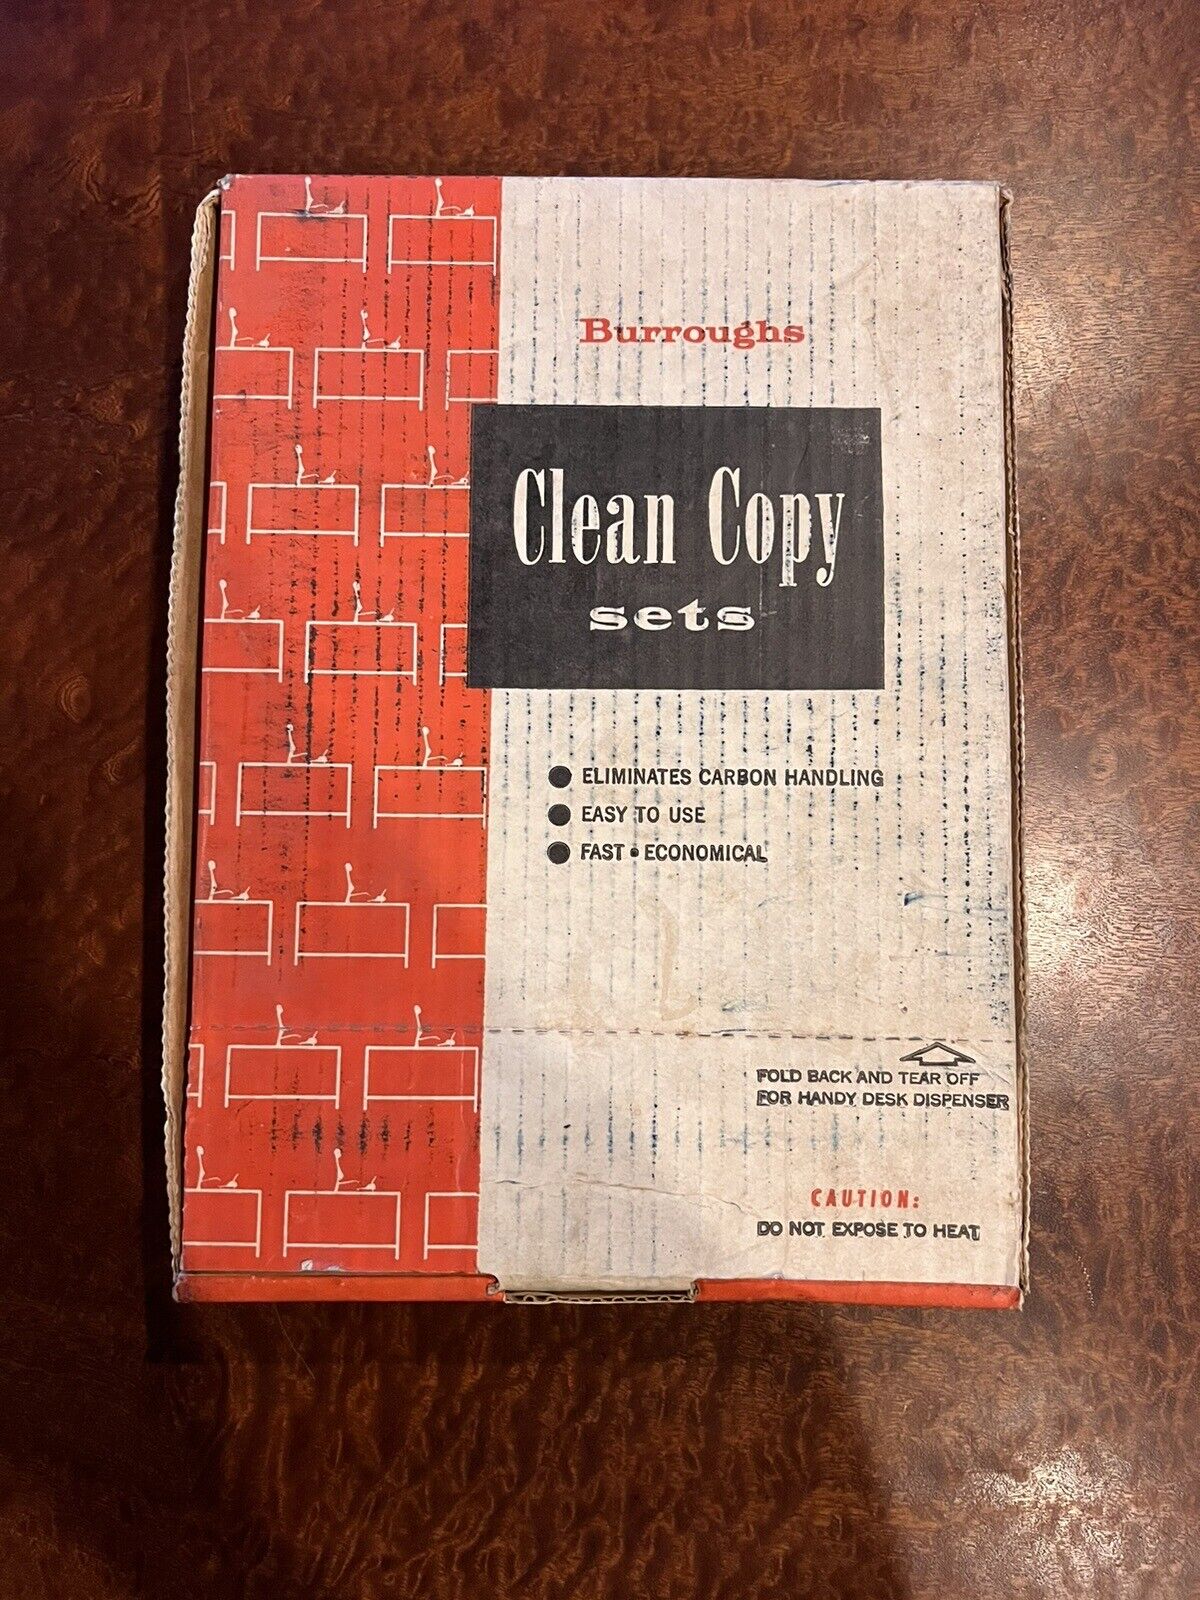 Vintage Copy Paper With Carbons Burroughs Clean Copy Sets USA